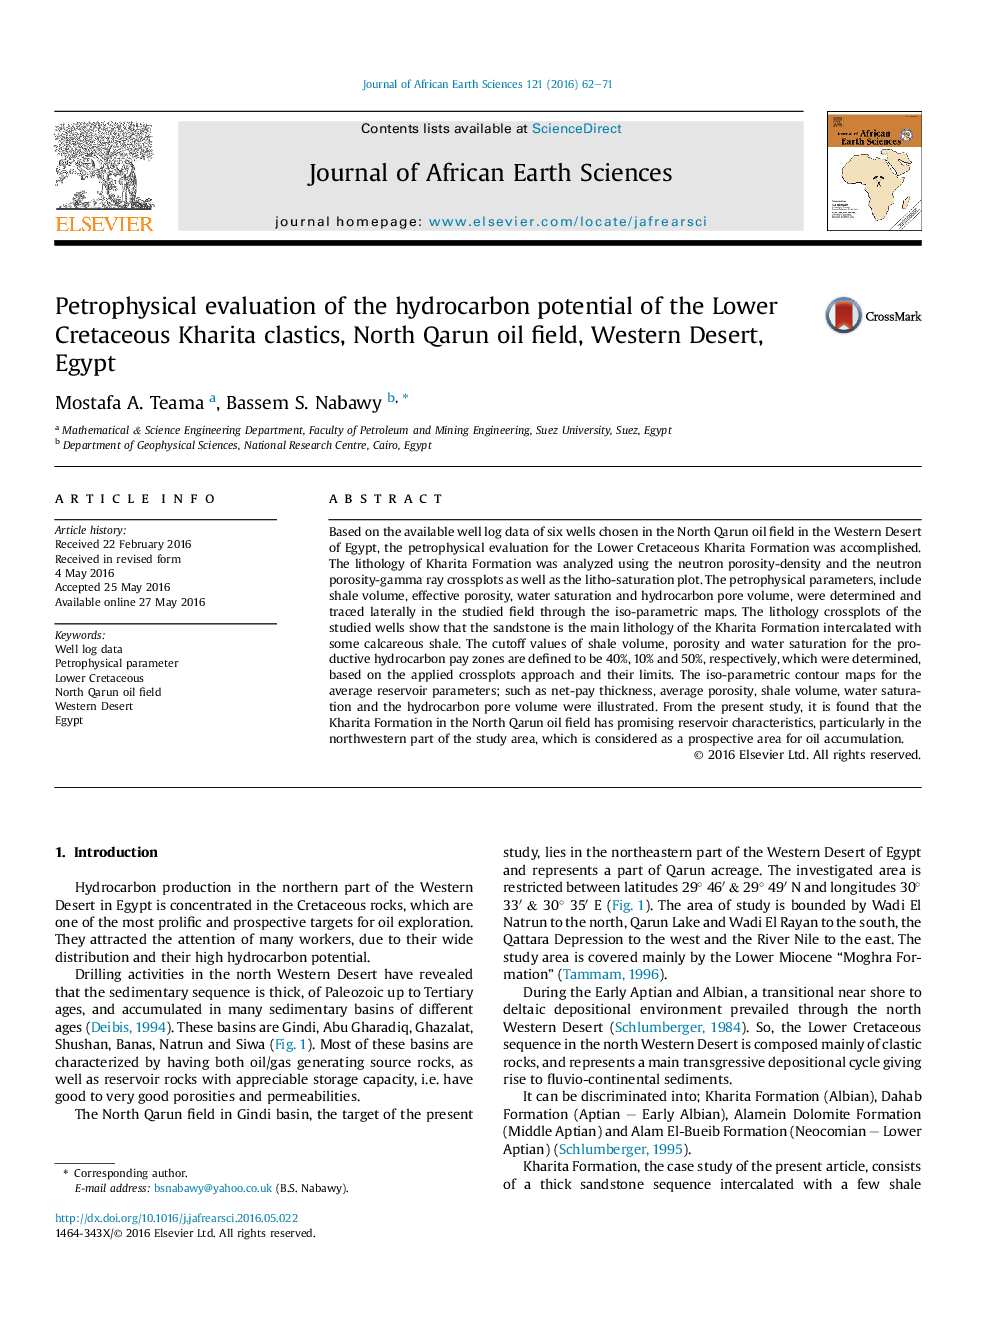 ارزیابی پتروفیزیک پتانسیل هیدروکربن کلاسیکهای خراطی خراسان، میدان نفتی شمالقرن، صحرای غربی، مصر 